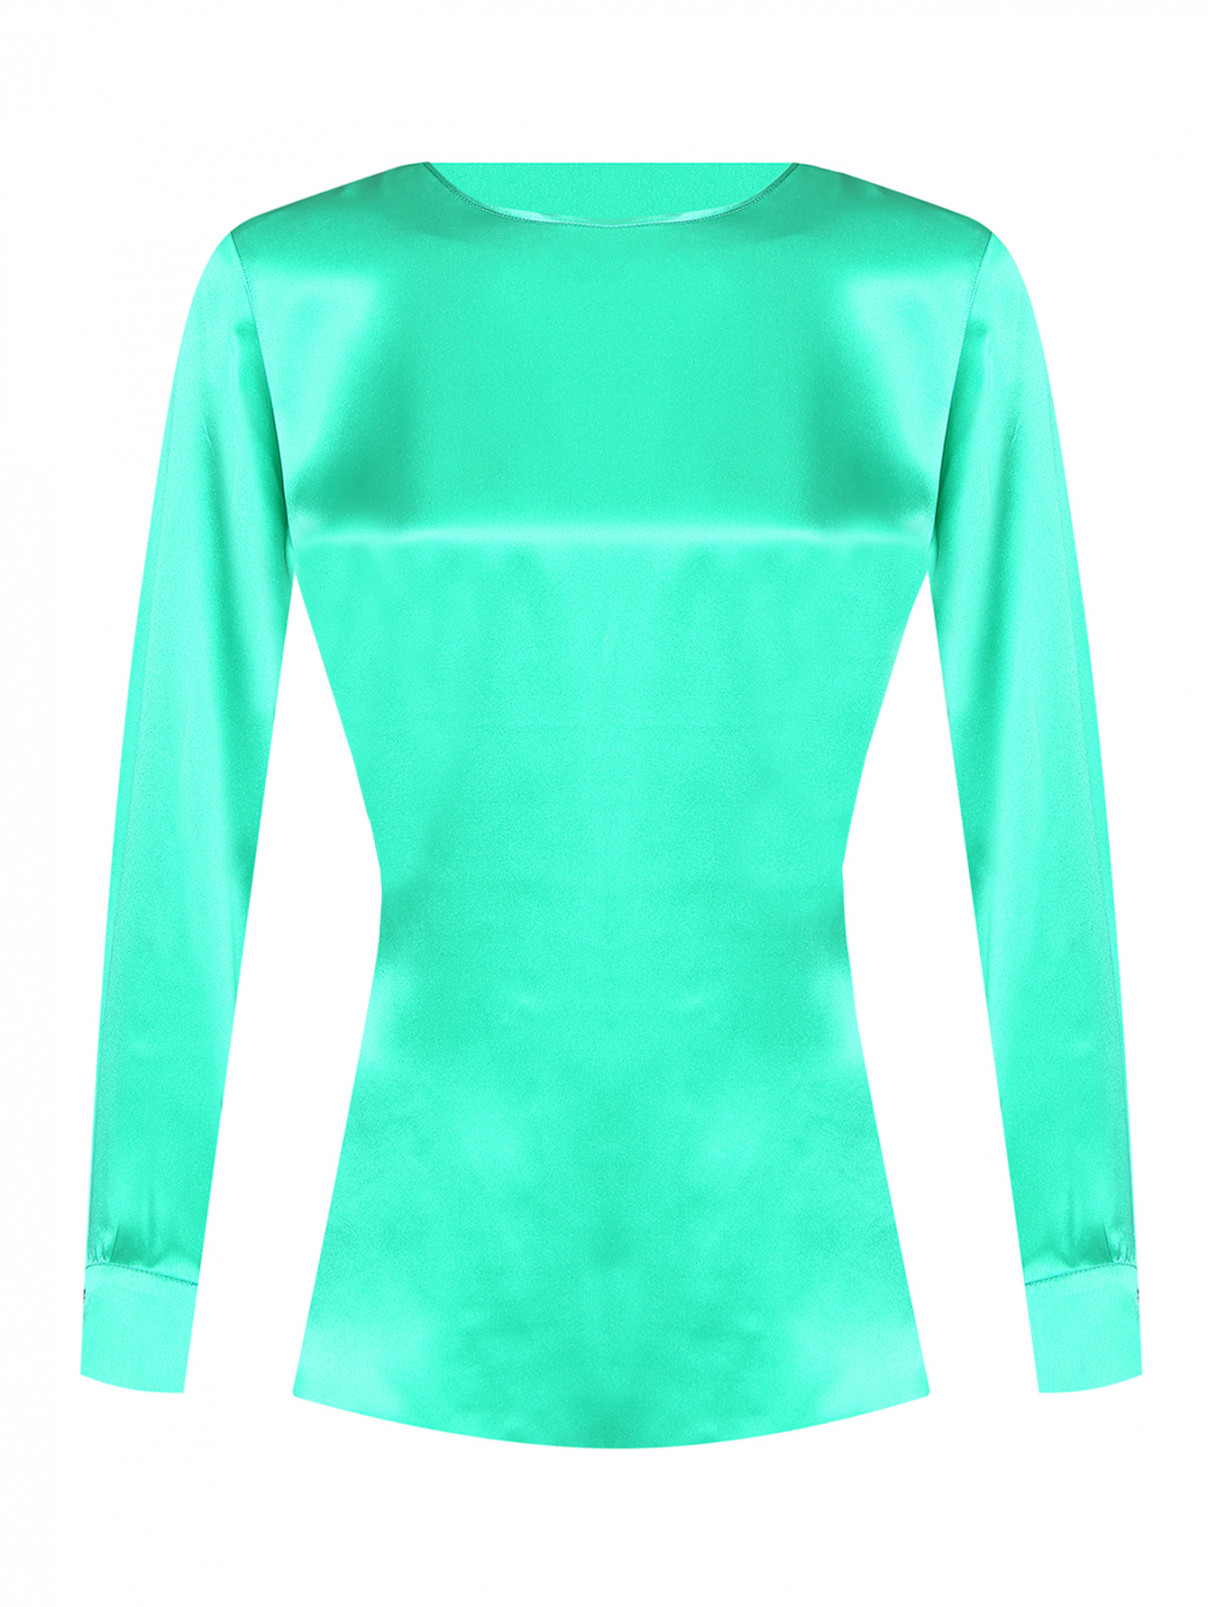 Однотонная блуза из шелка Marina Rinaldi  –  Общий вид  – Цвет:  Зеленый